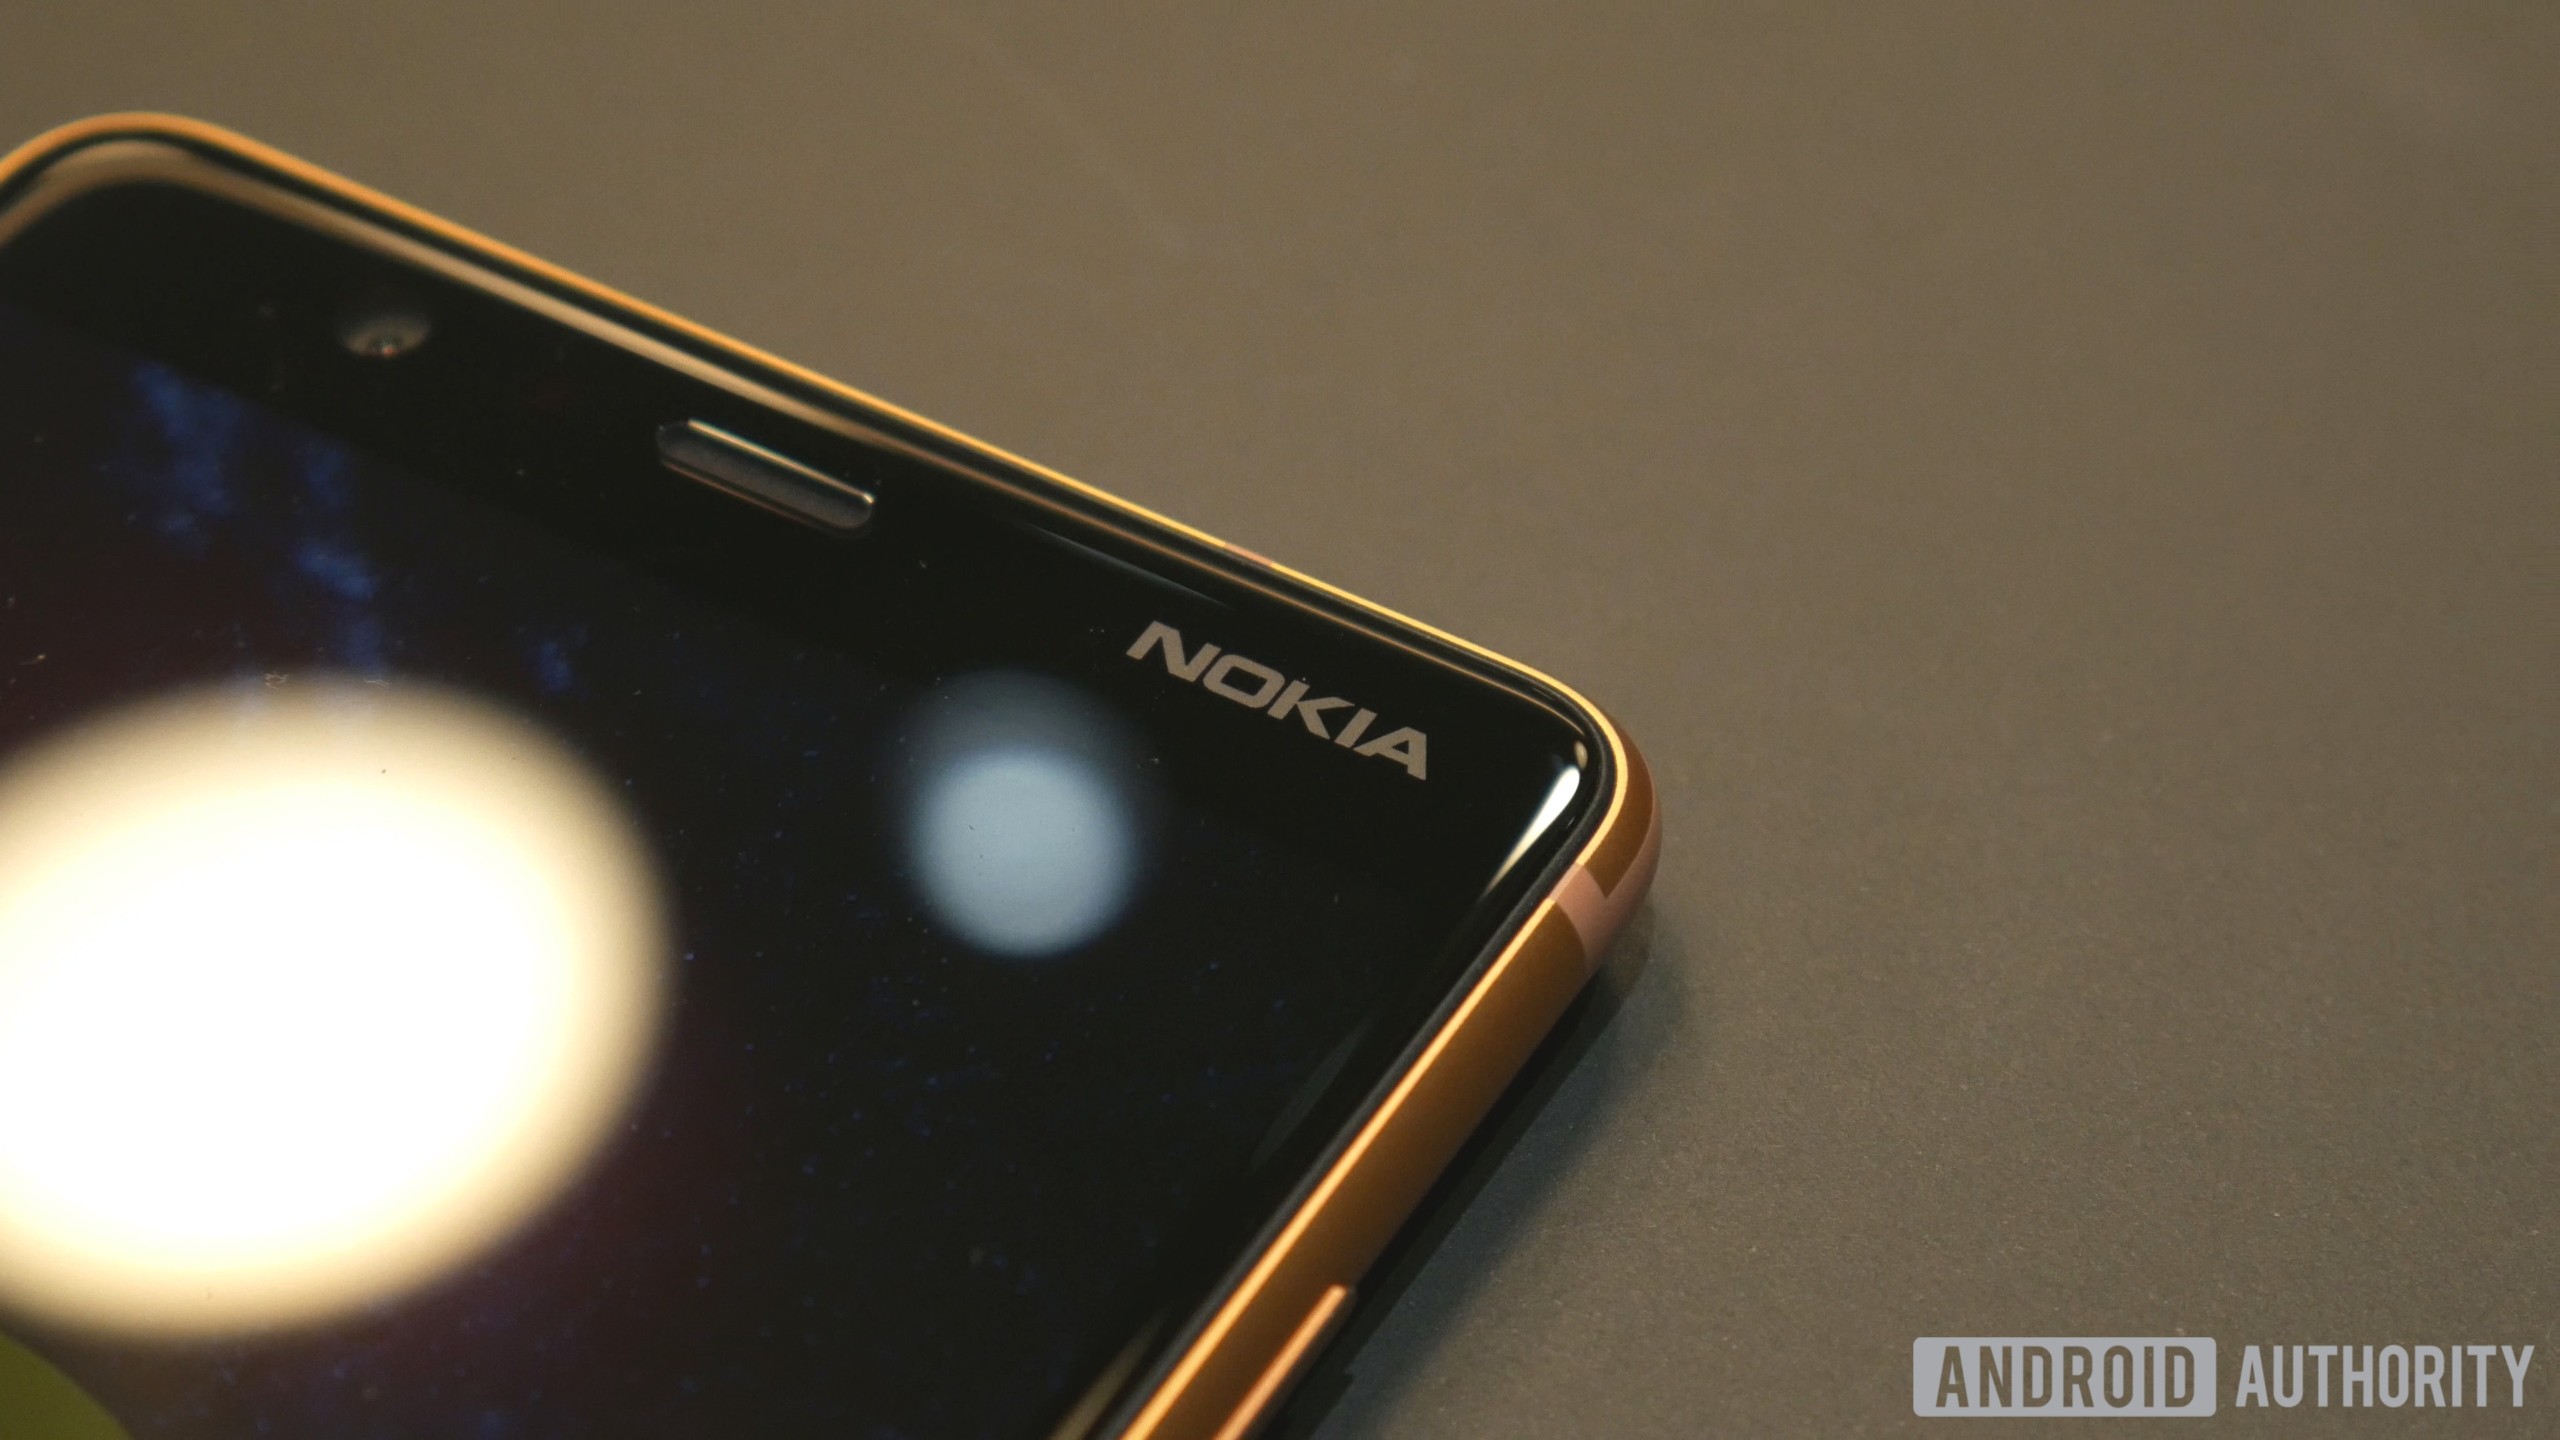 Бюджетный смартфон Nokia был замечен в FCC